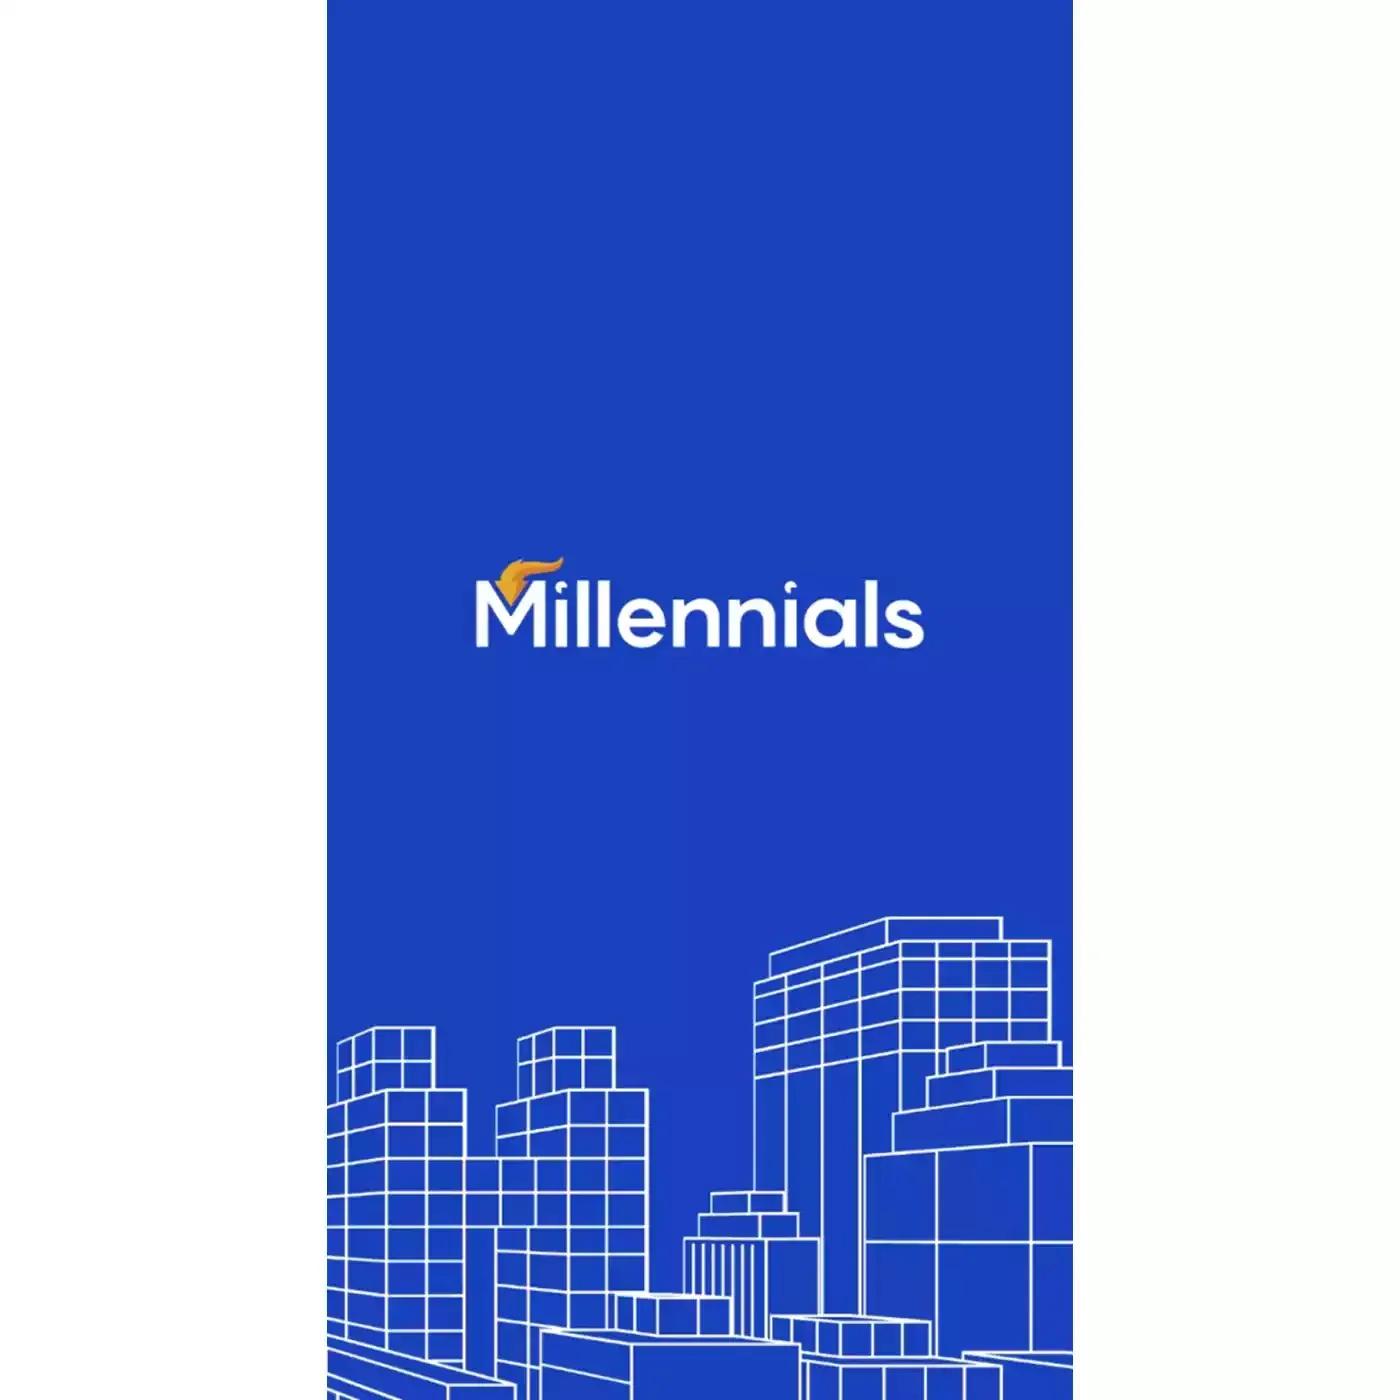 Millennials Investment